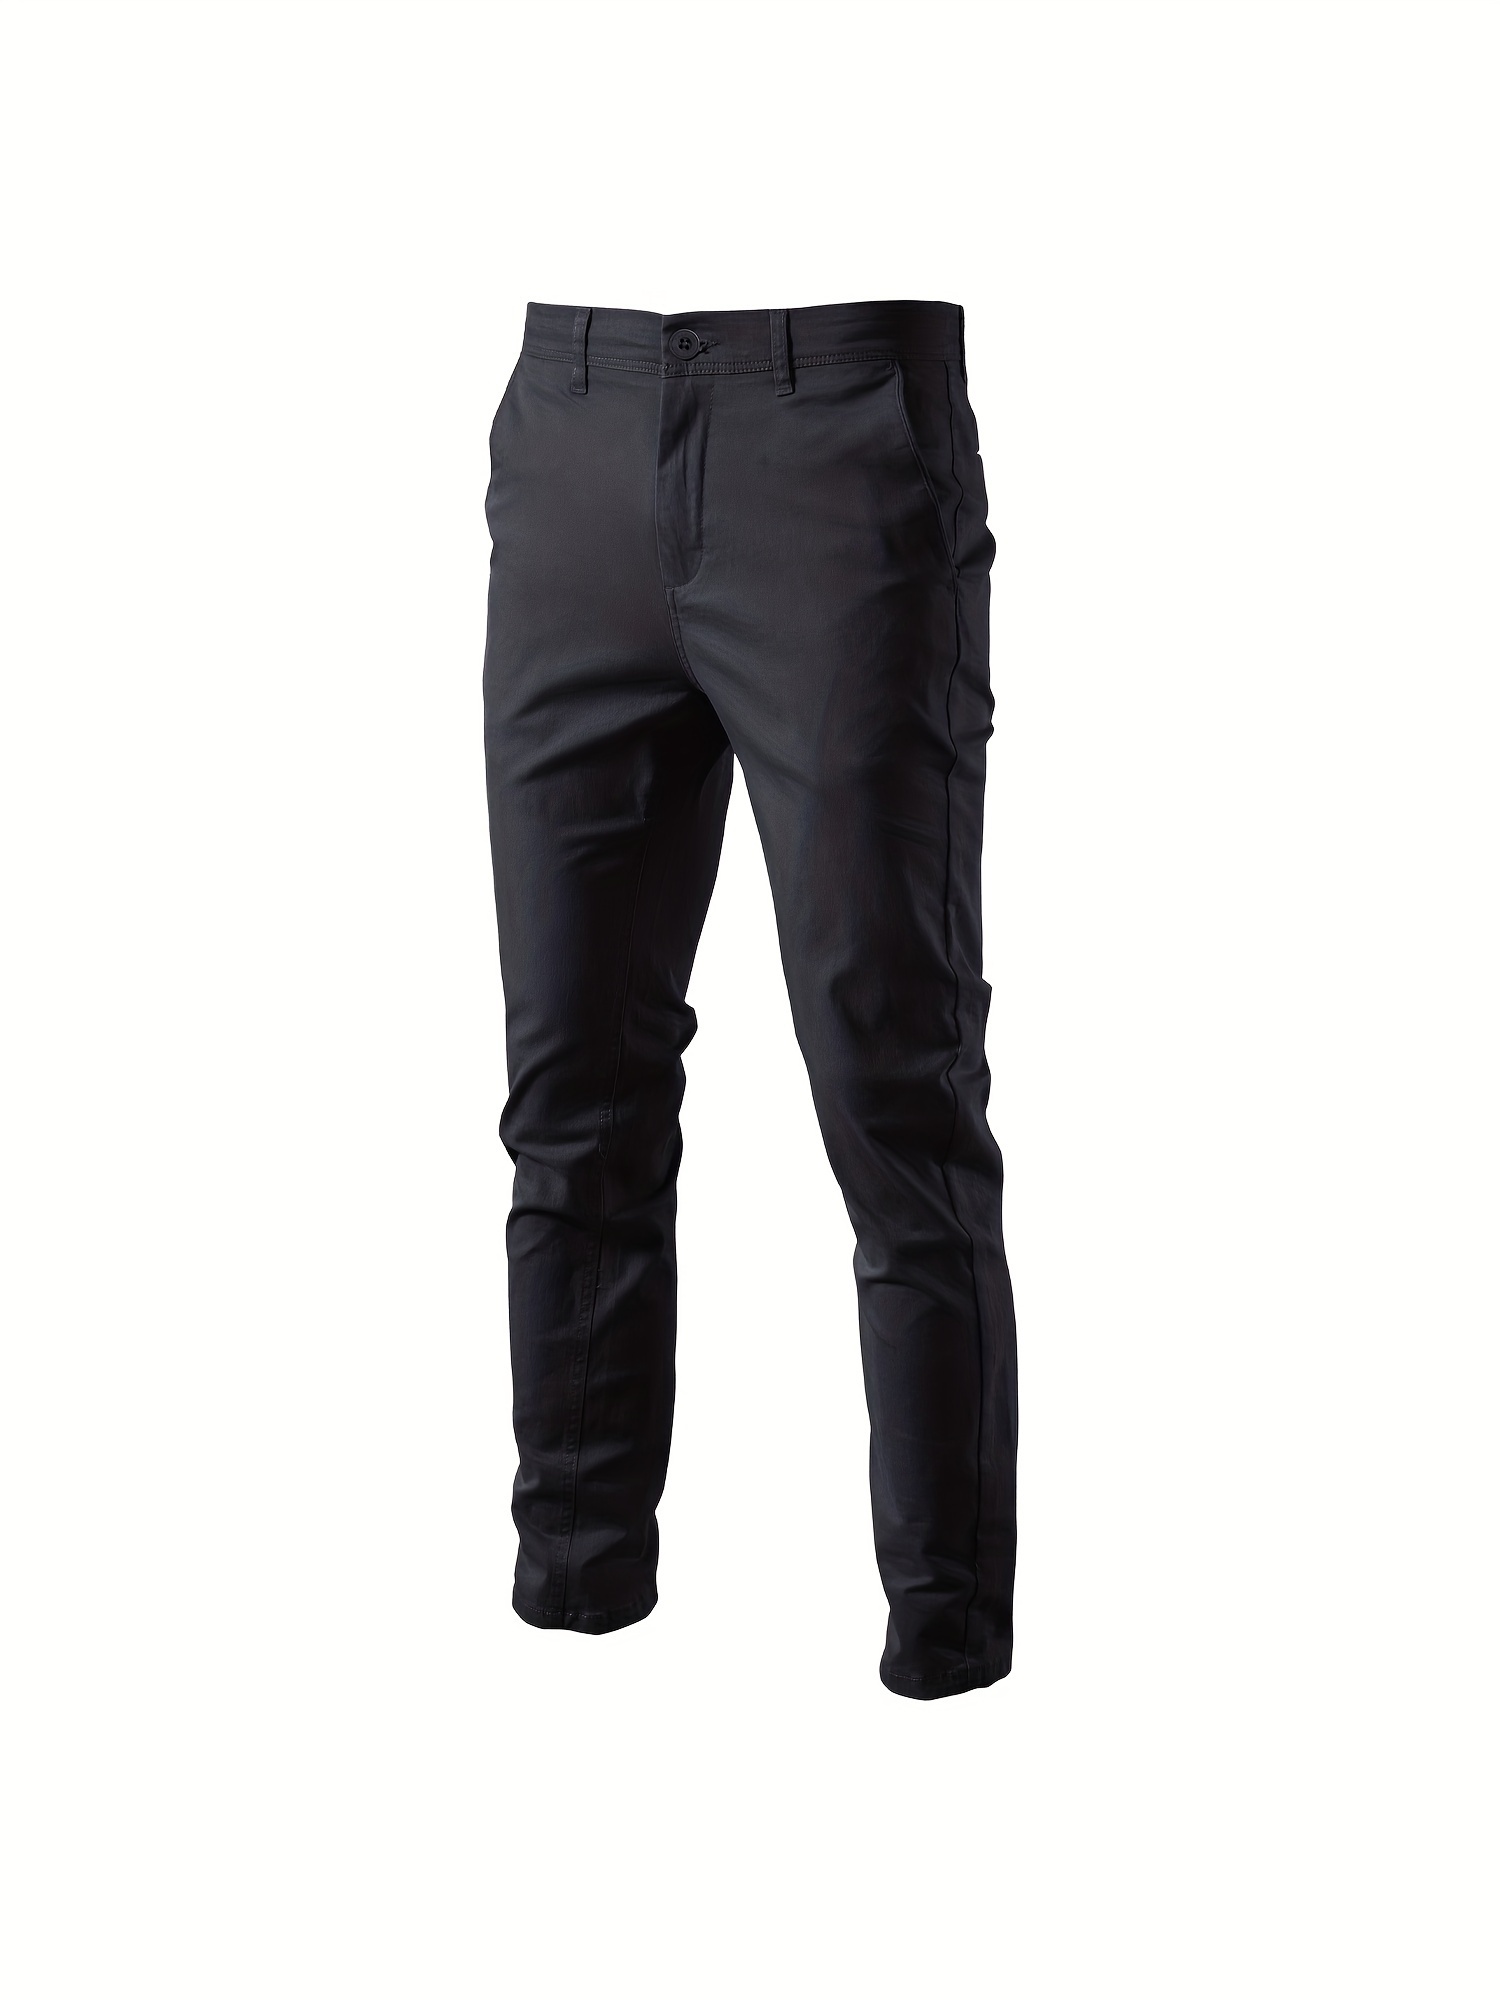 Pantalones de trabajo tipo cargo para hombre, cómodos, casuales, holgados,  estilo cargo, tela Ripstop, con bolsillos